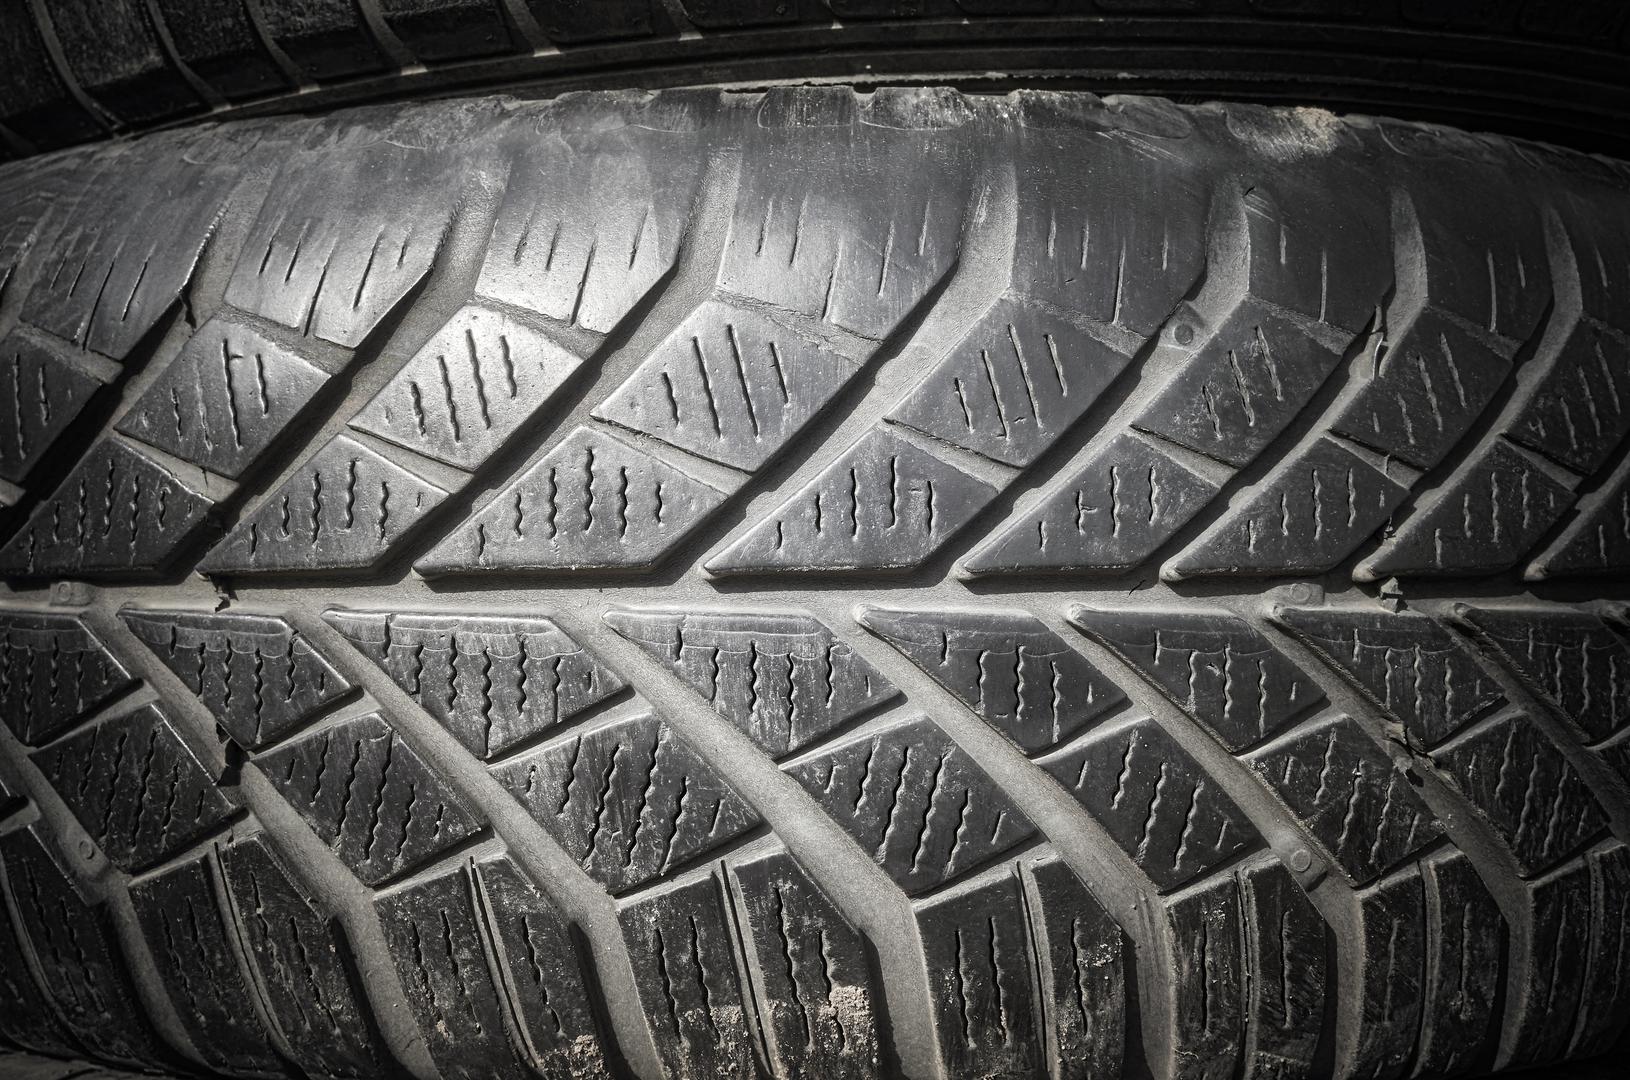 Ukoliko automobil ima istrošene gume, uračunajte trošak kupovine novog seta guma u cijenu automobile